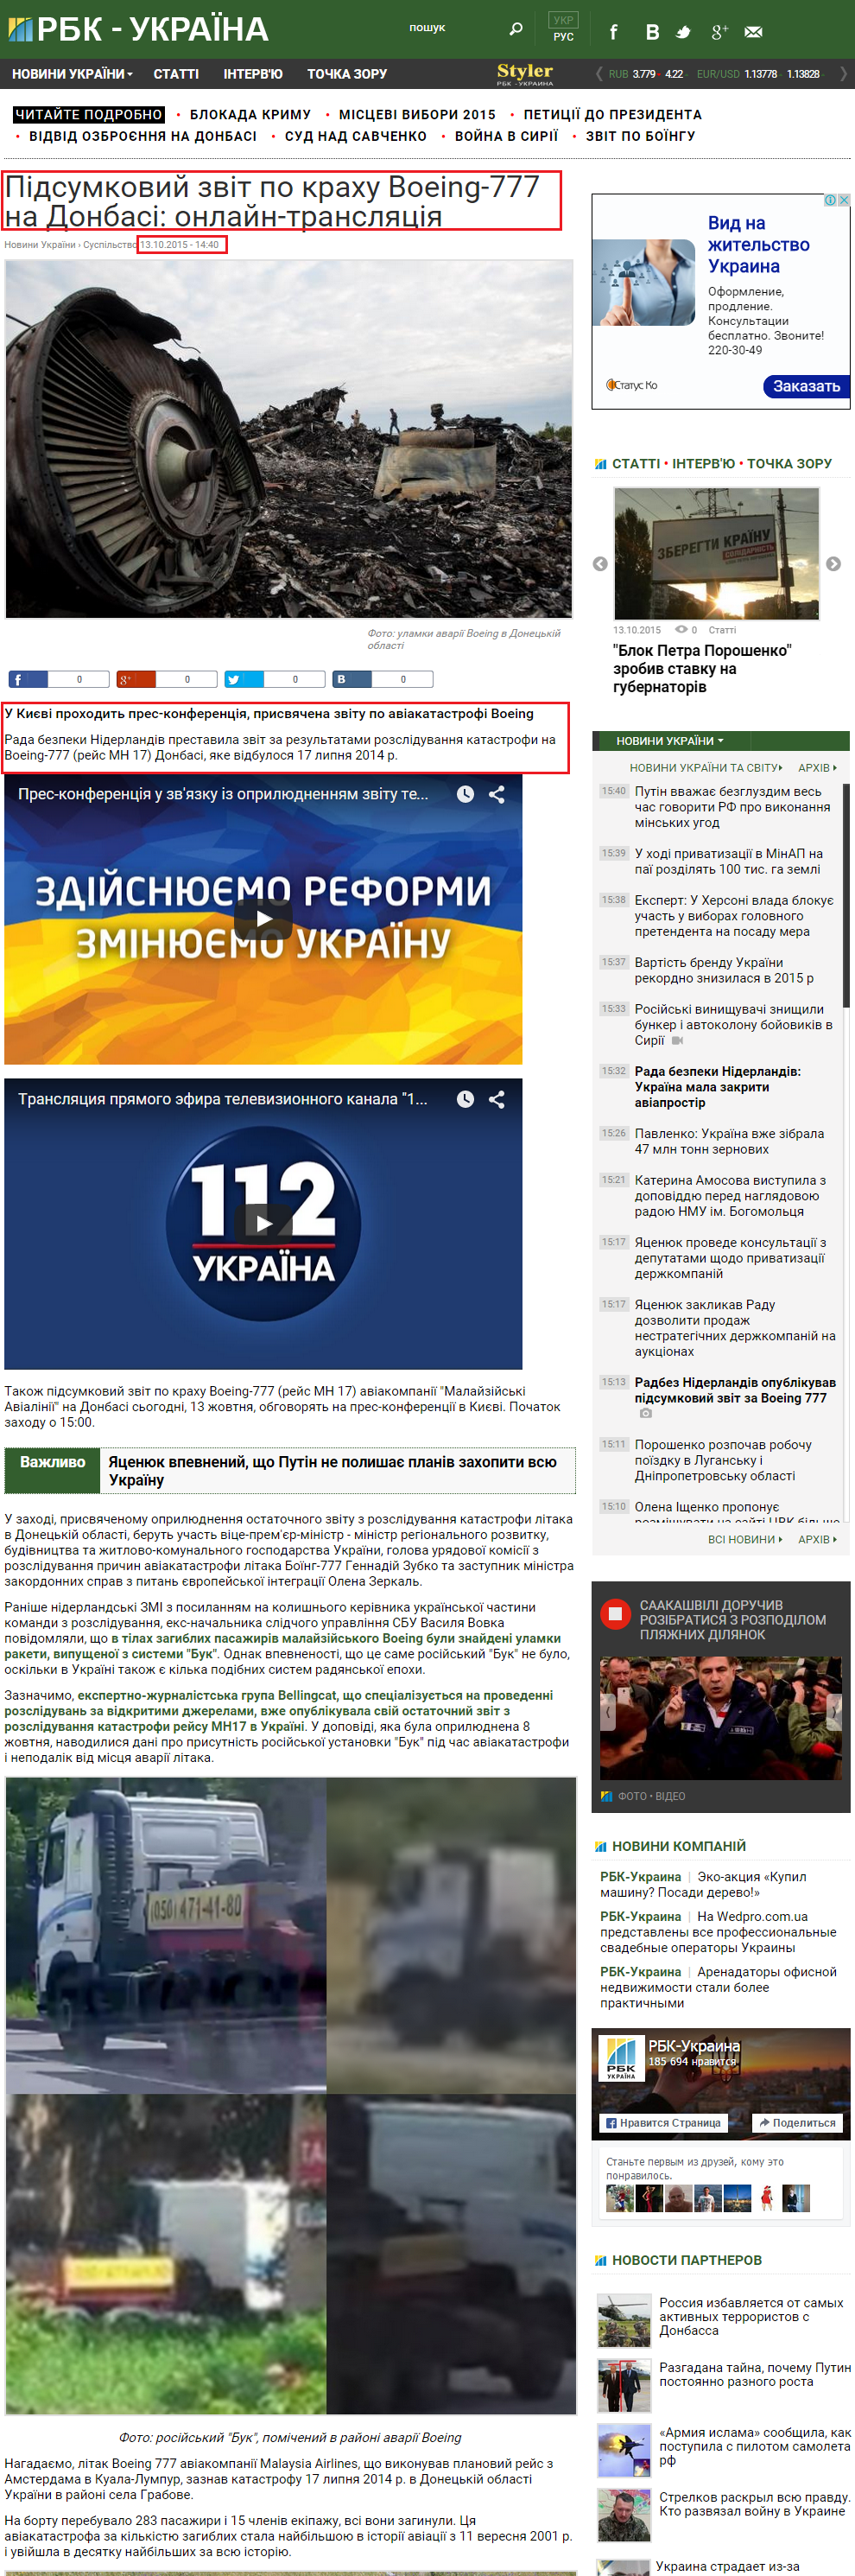 http://www.rbc.ua/ukr/news/itogovyy-otchet-krusheniyu-boeing-donbasse-1444651425.html